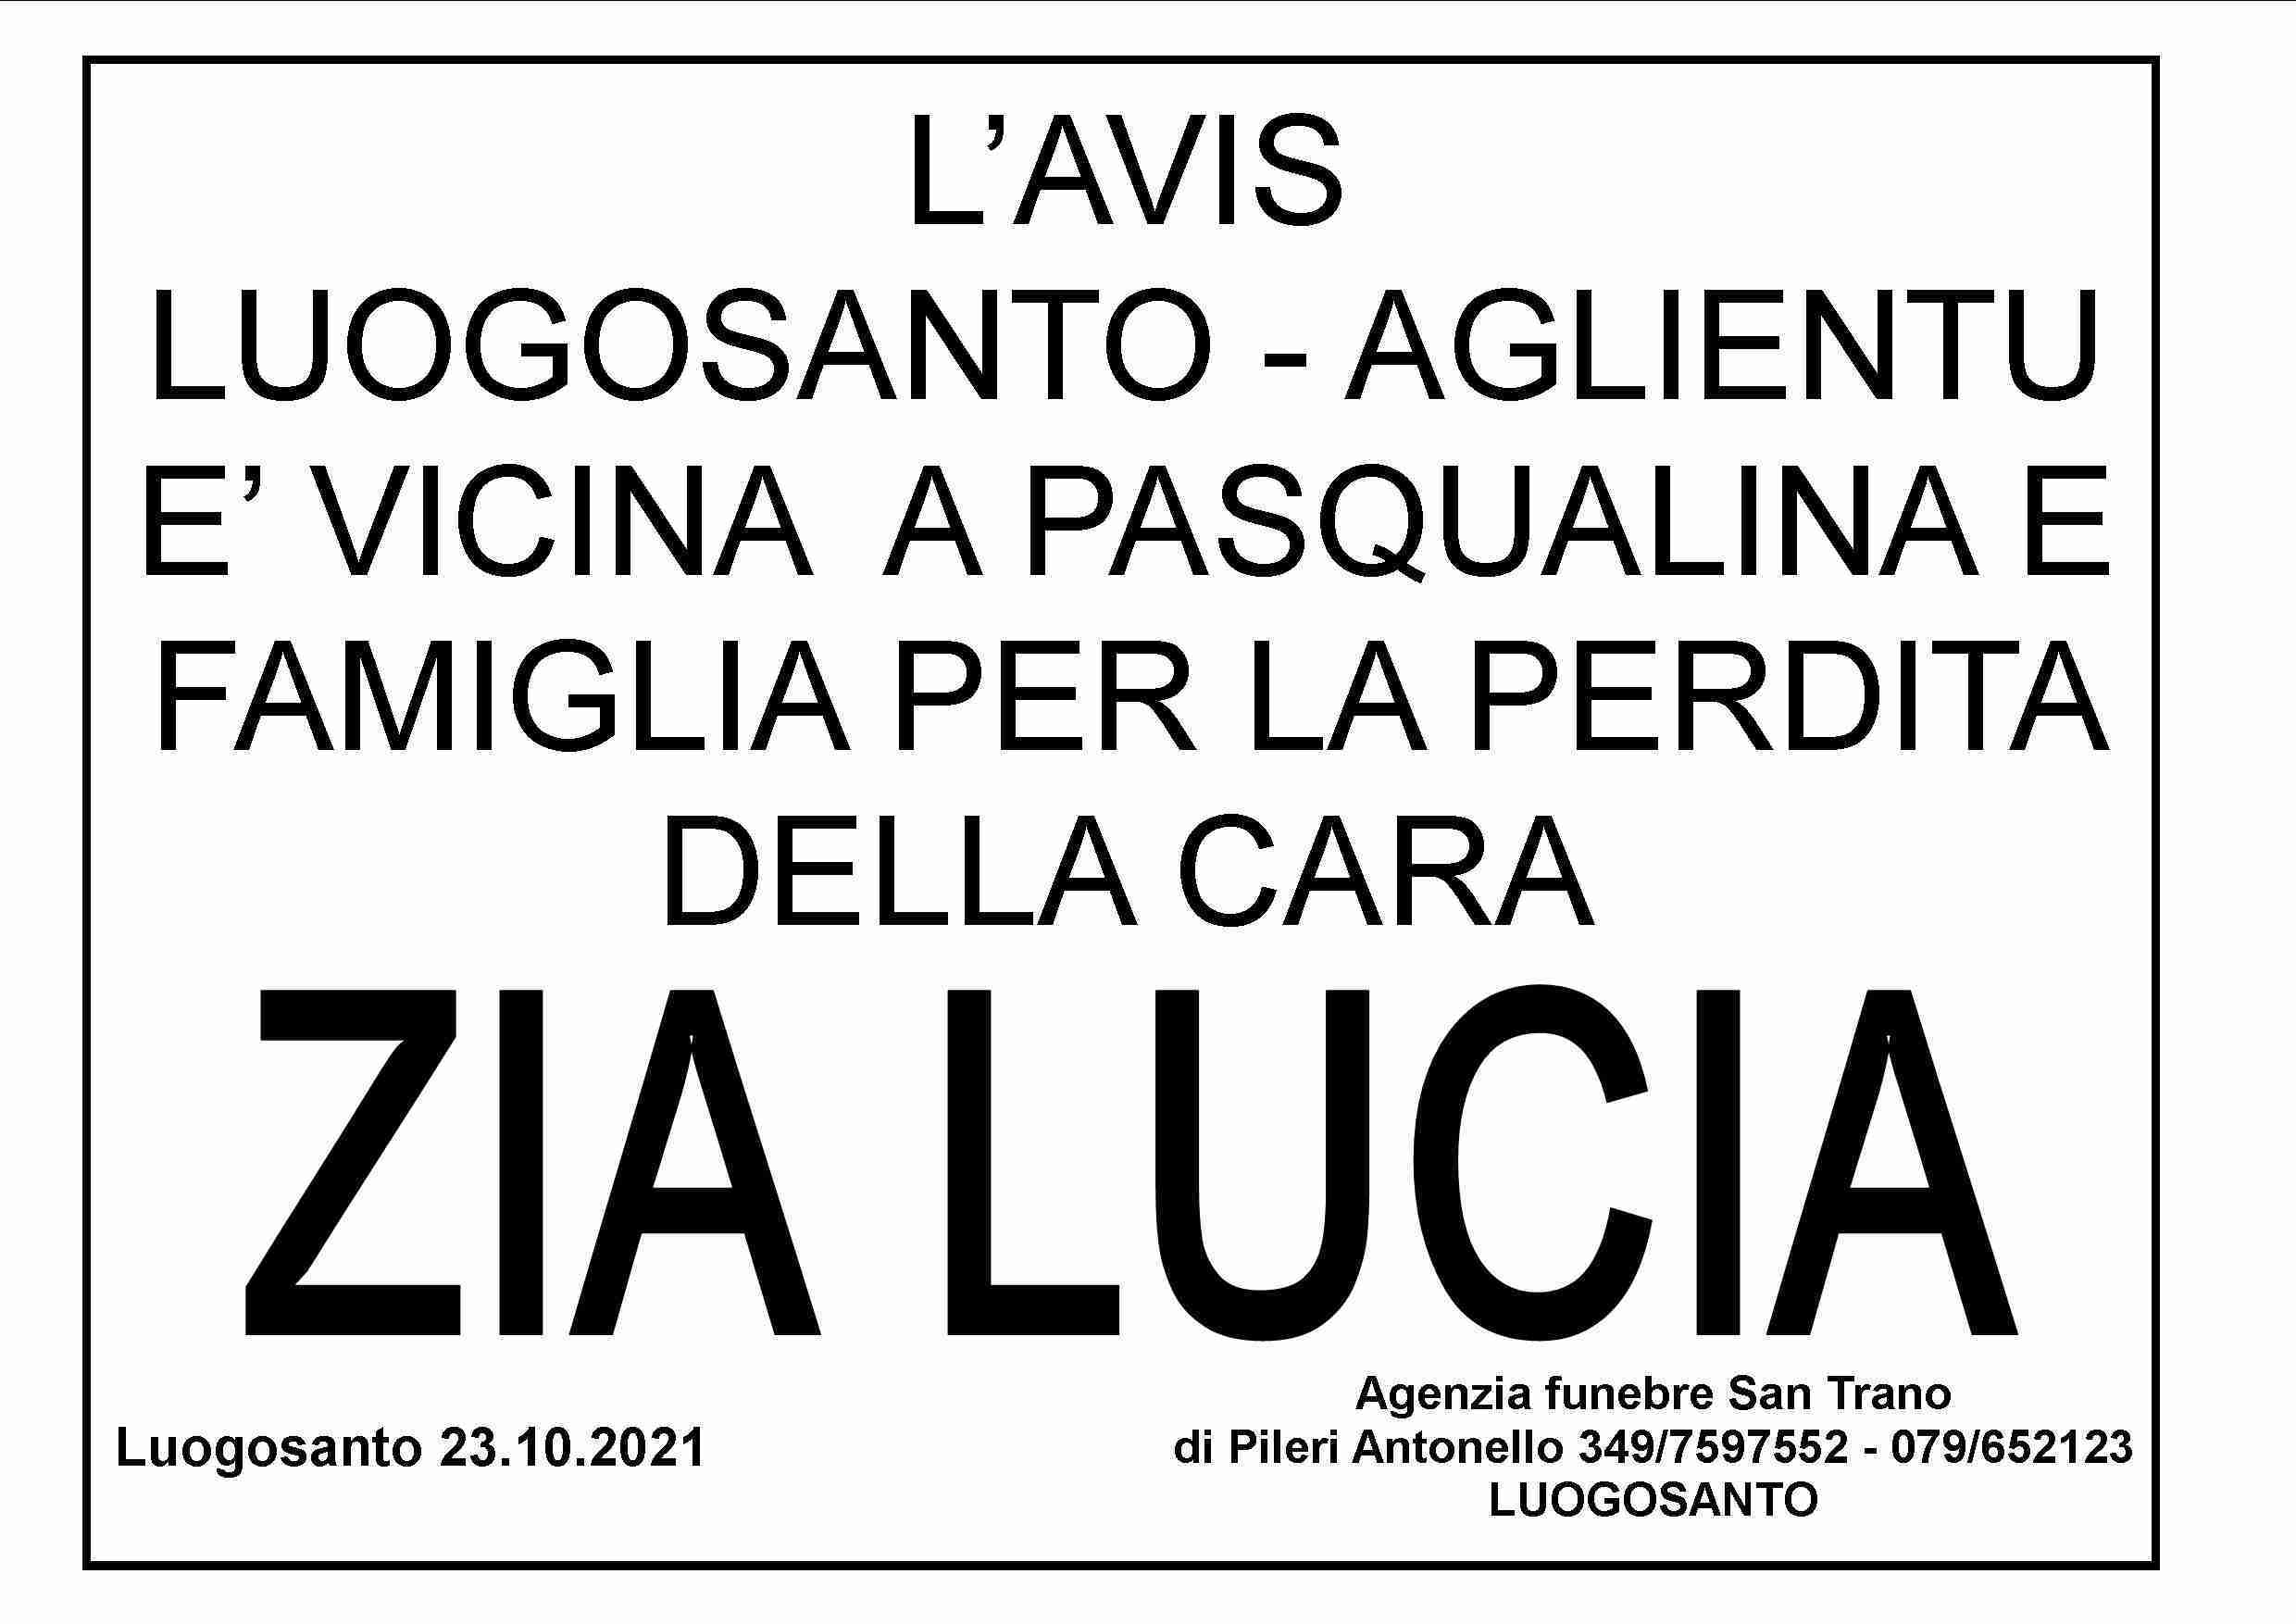 Lucia Pruneddu